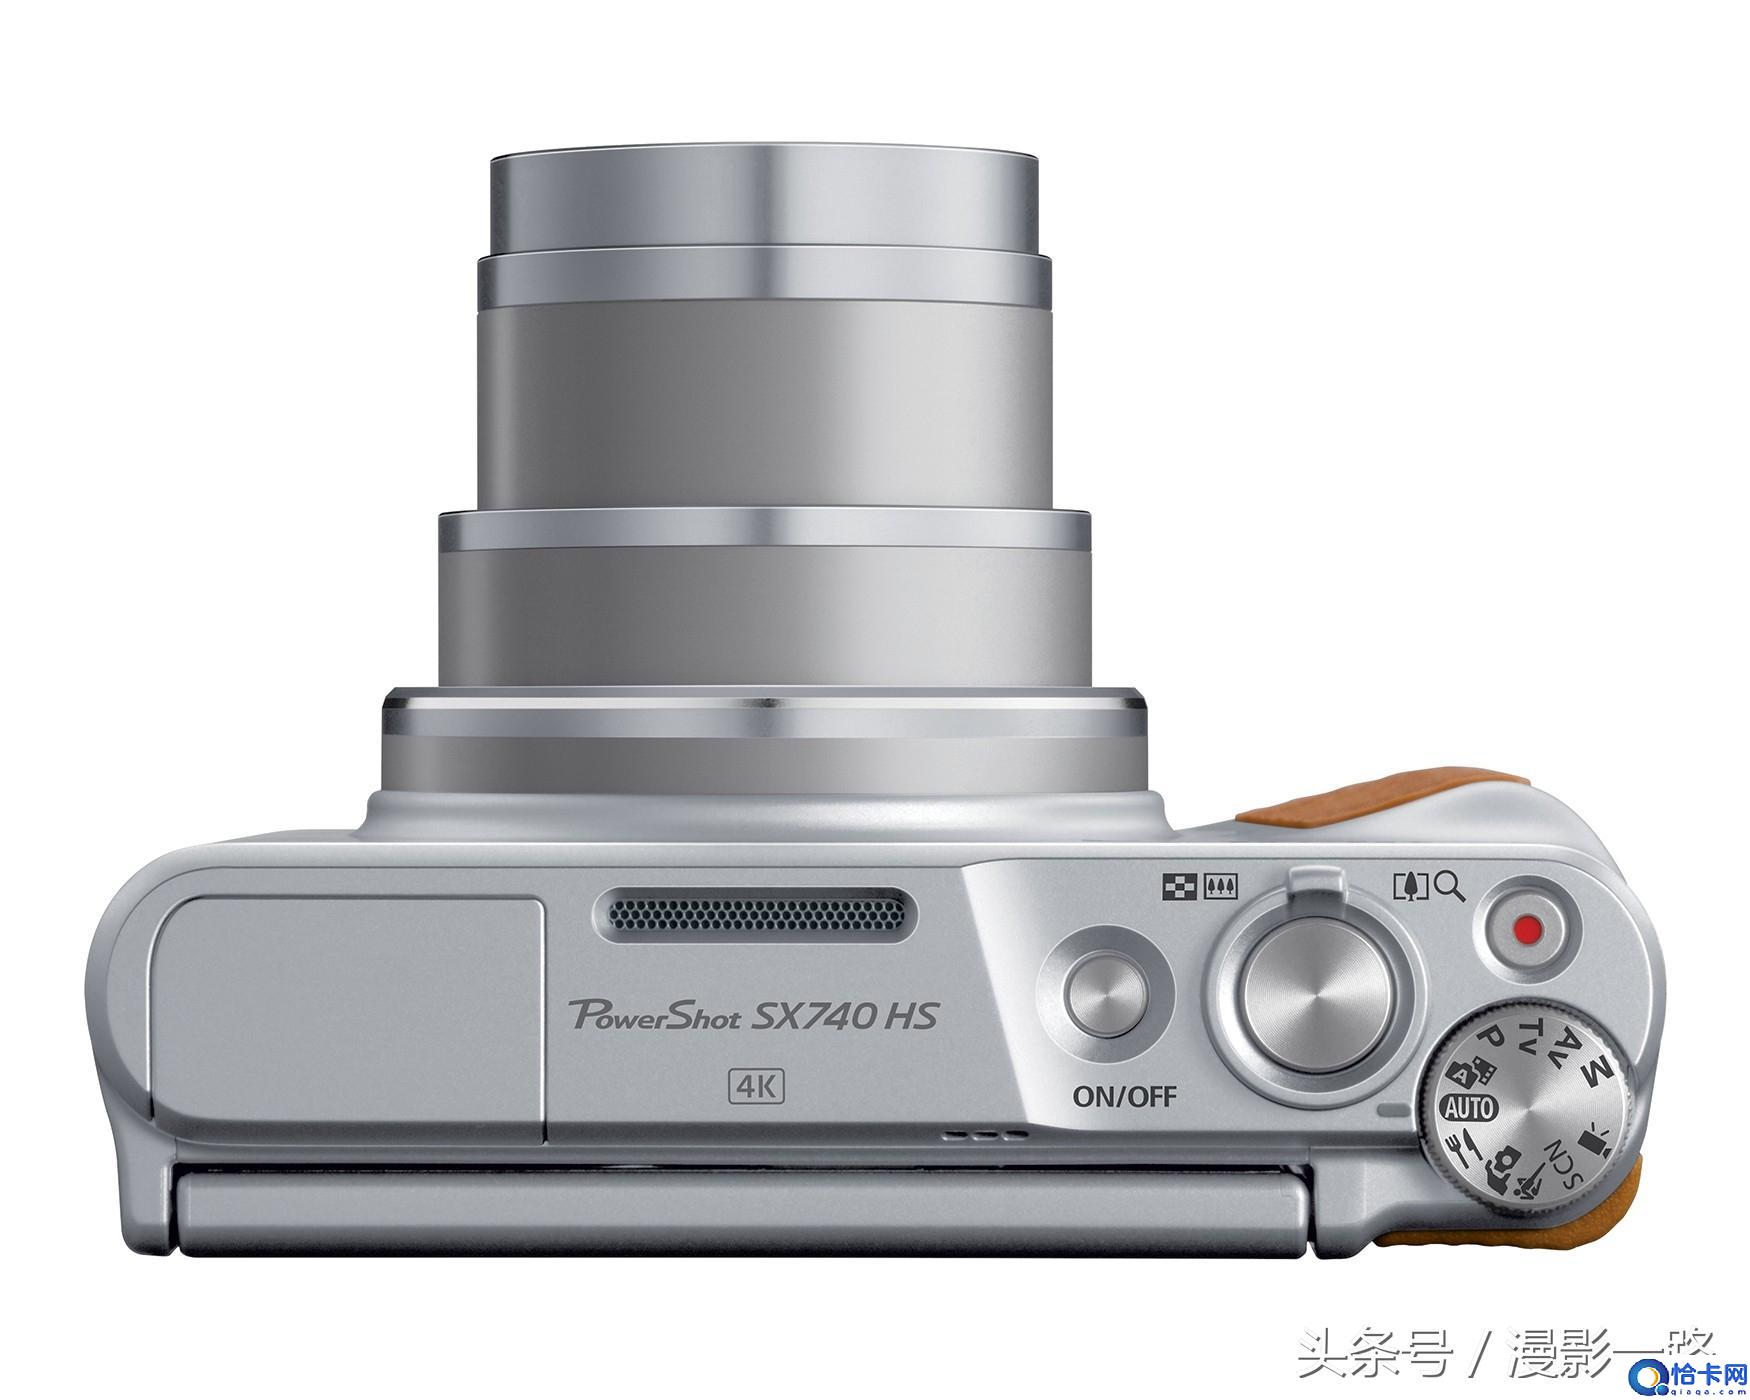 佳能PowerShot SX740 HS，小机身40倍光学变焦的4K相机